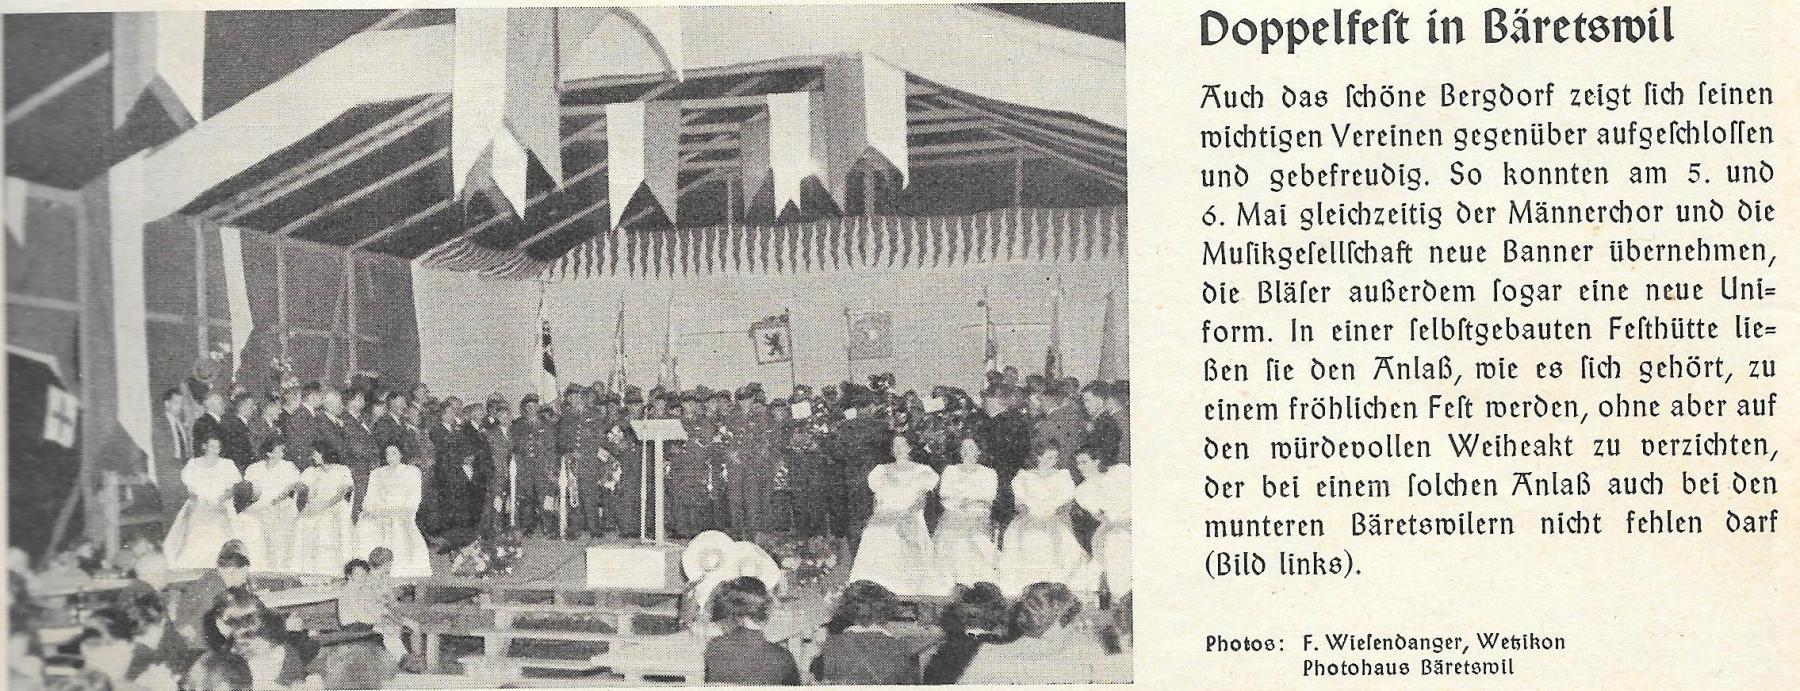 Neue Banner (und Uniformen) für Musikgesellschaft und Männerchor, 5./6. Mai 1950